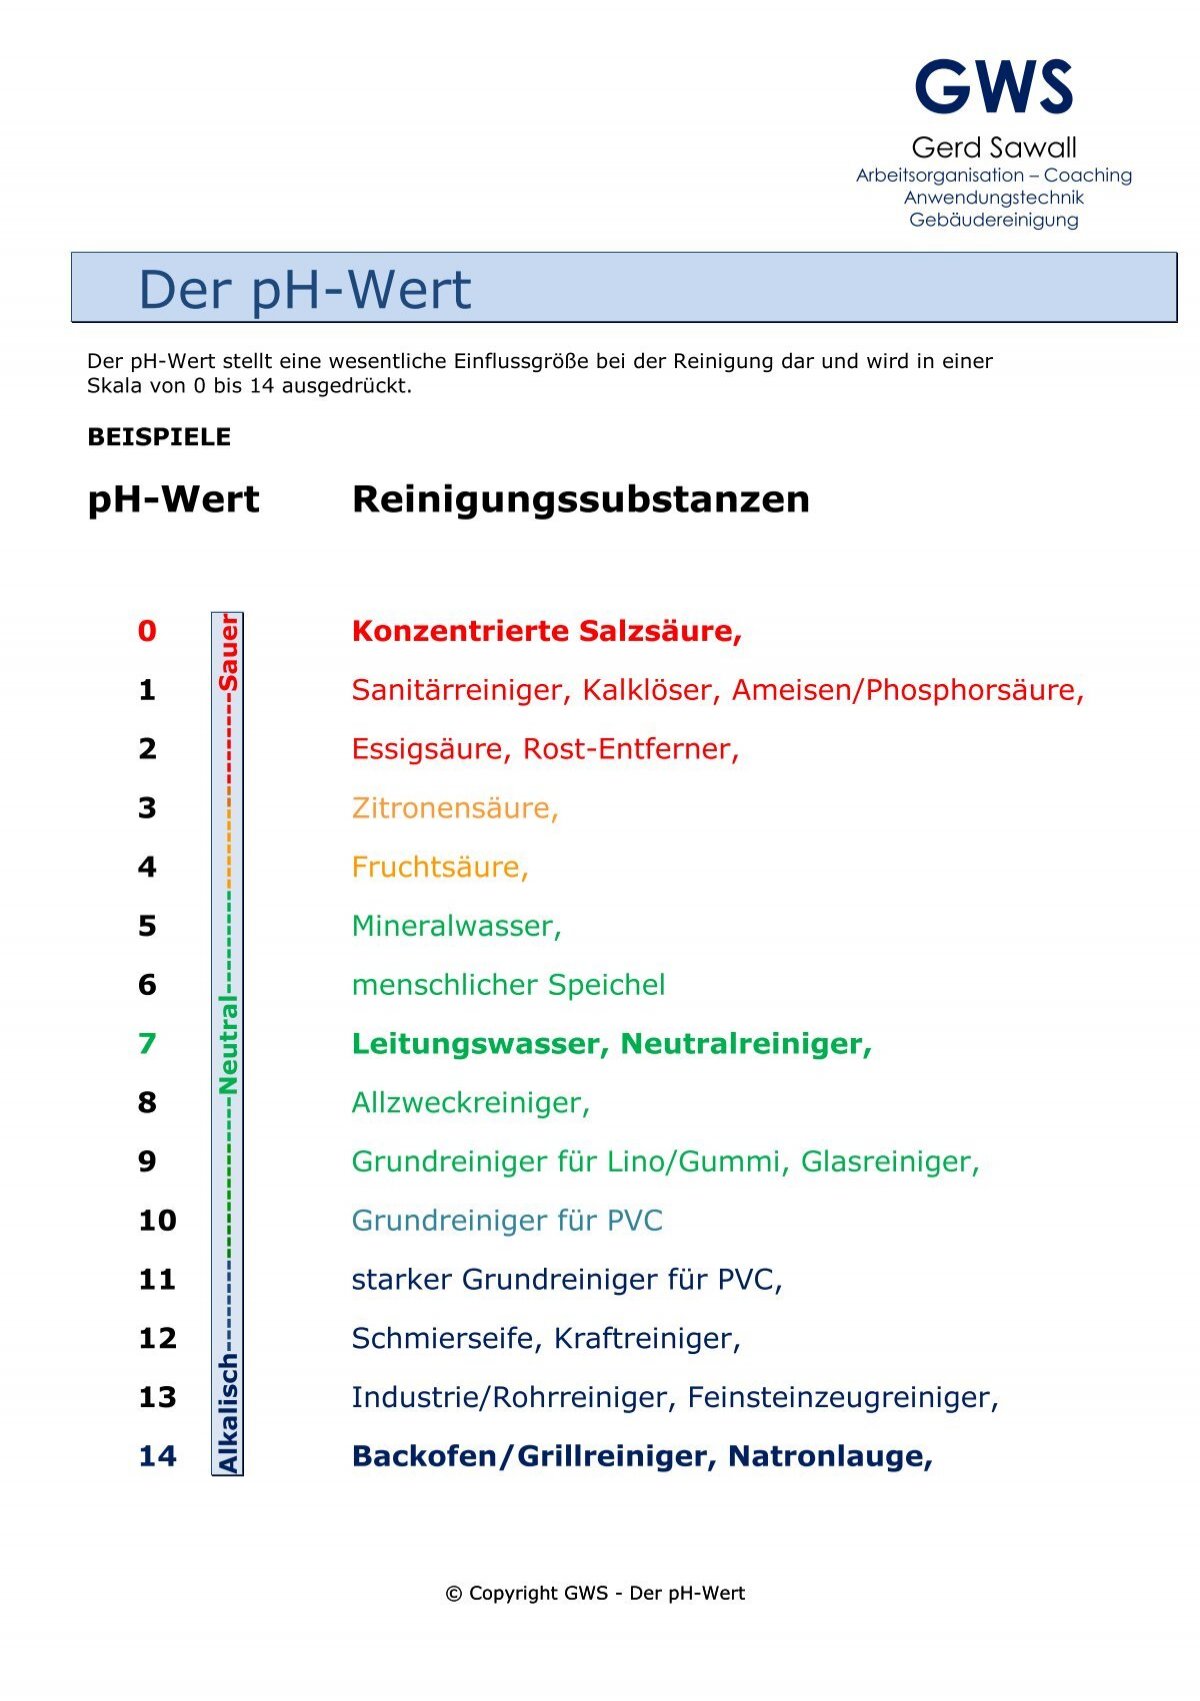 Der pH-Wert - Gws-sawall.de